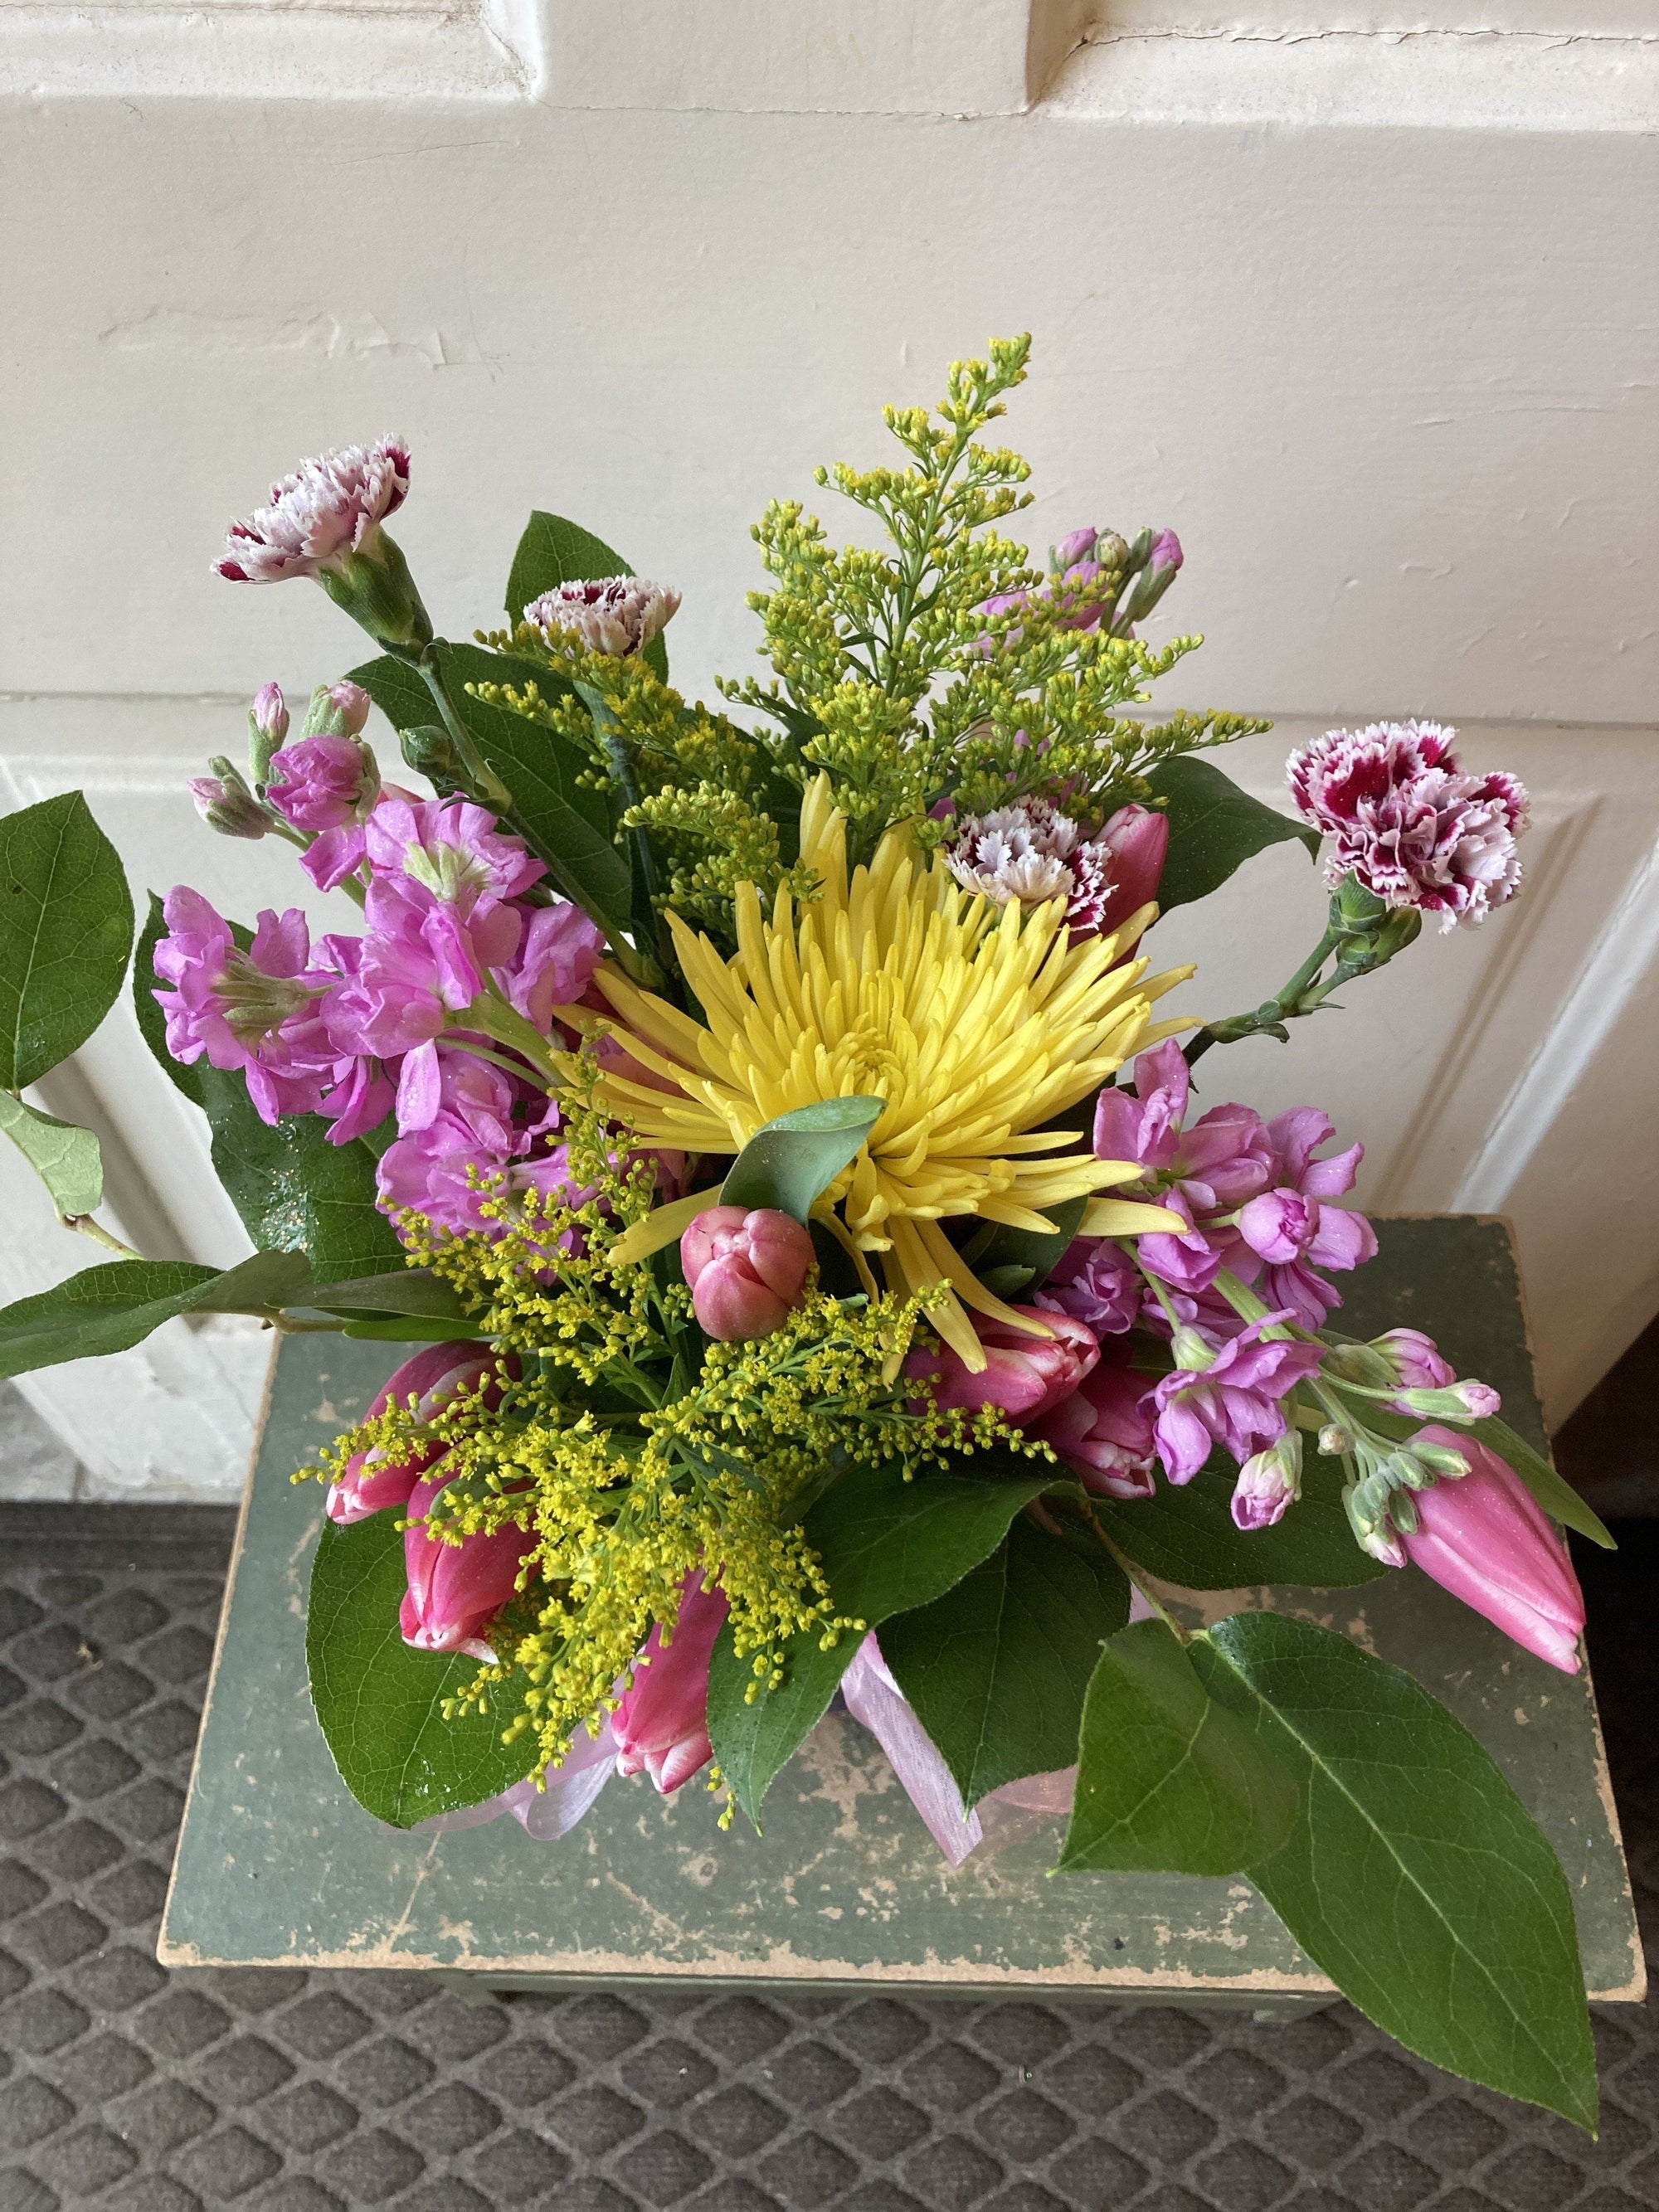 Petal Pusher - A Unique Green Bay Florist - Send Fresh Flowers